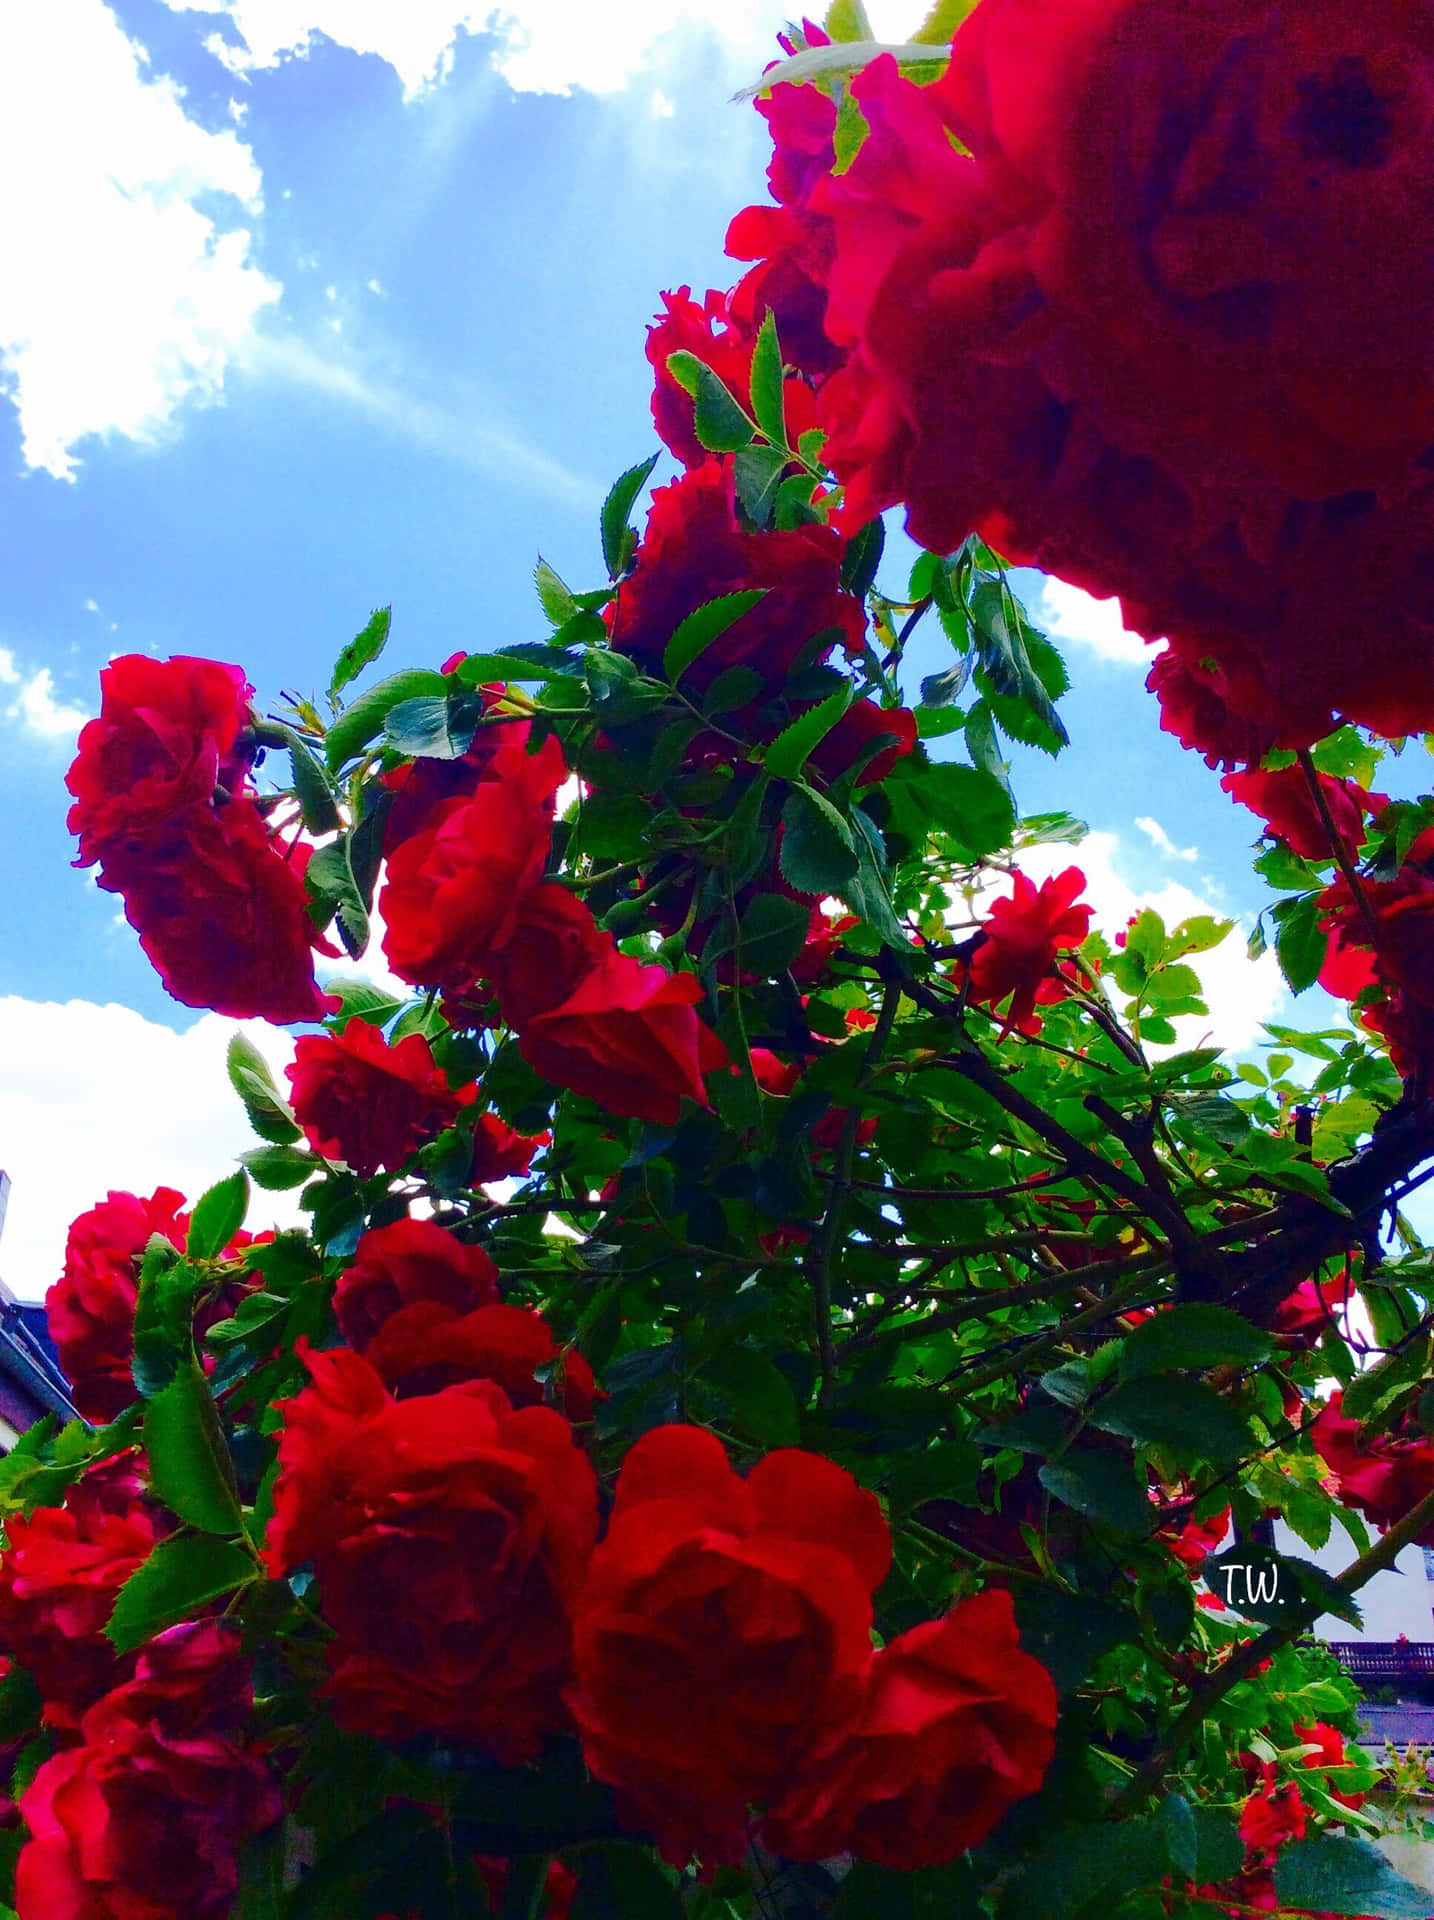 En enkelt rød rose i fuld blomst, der skinner i lyset. Wallpaper